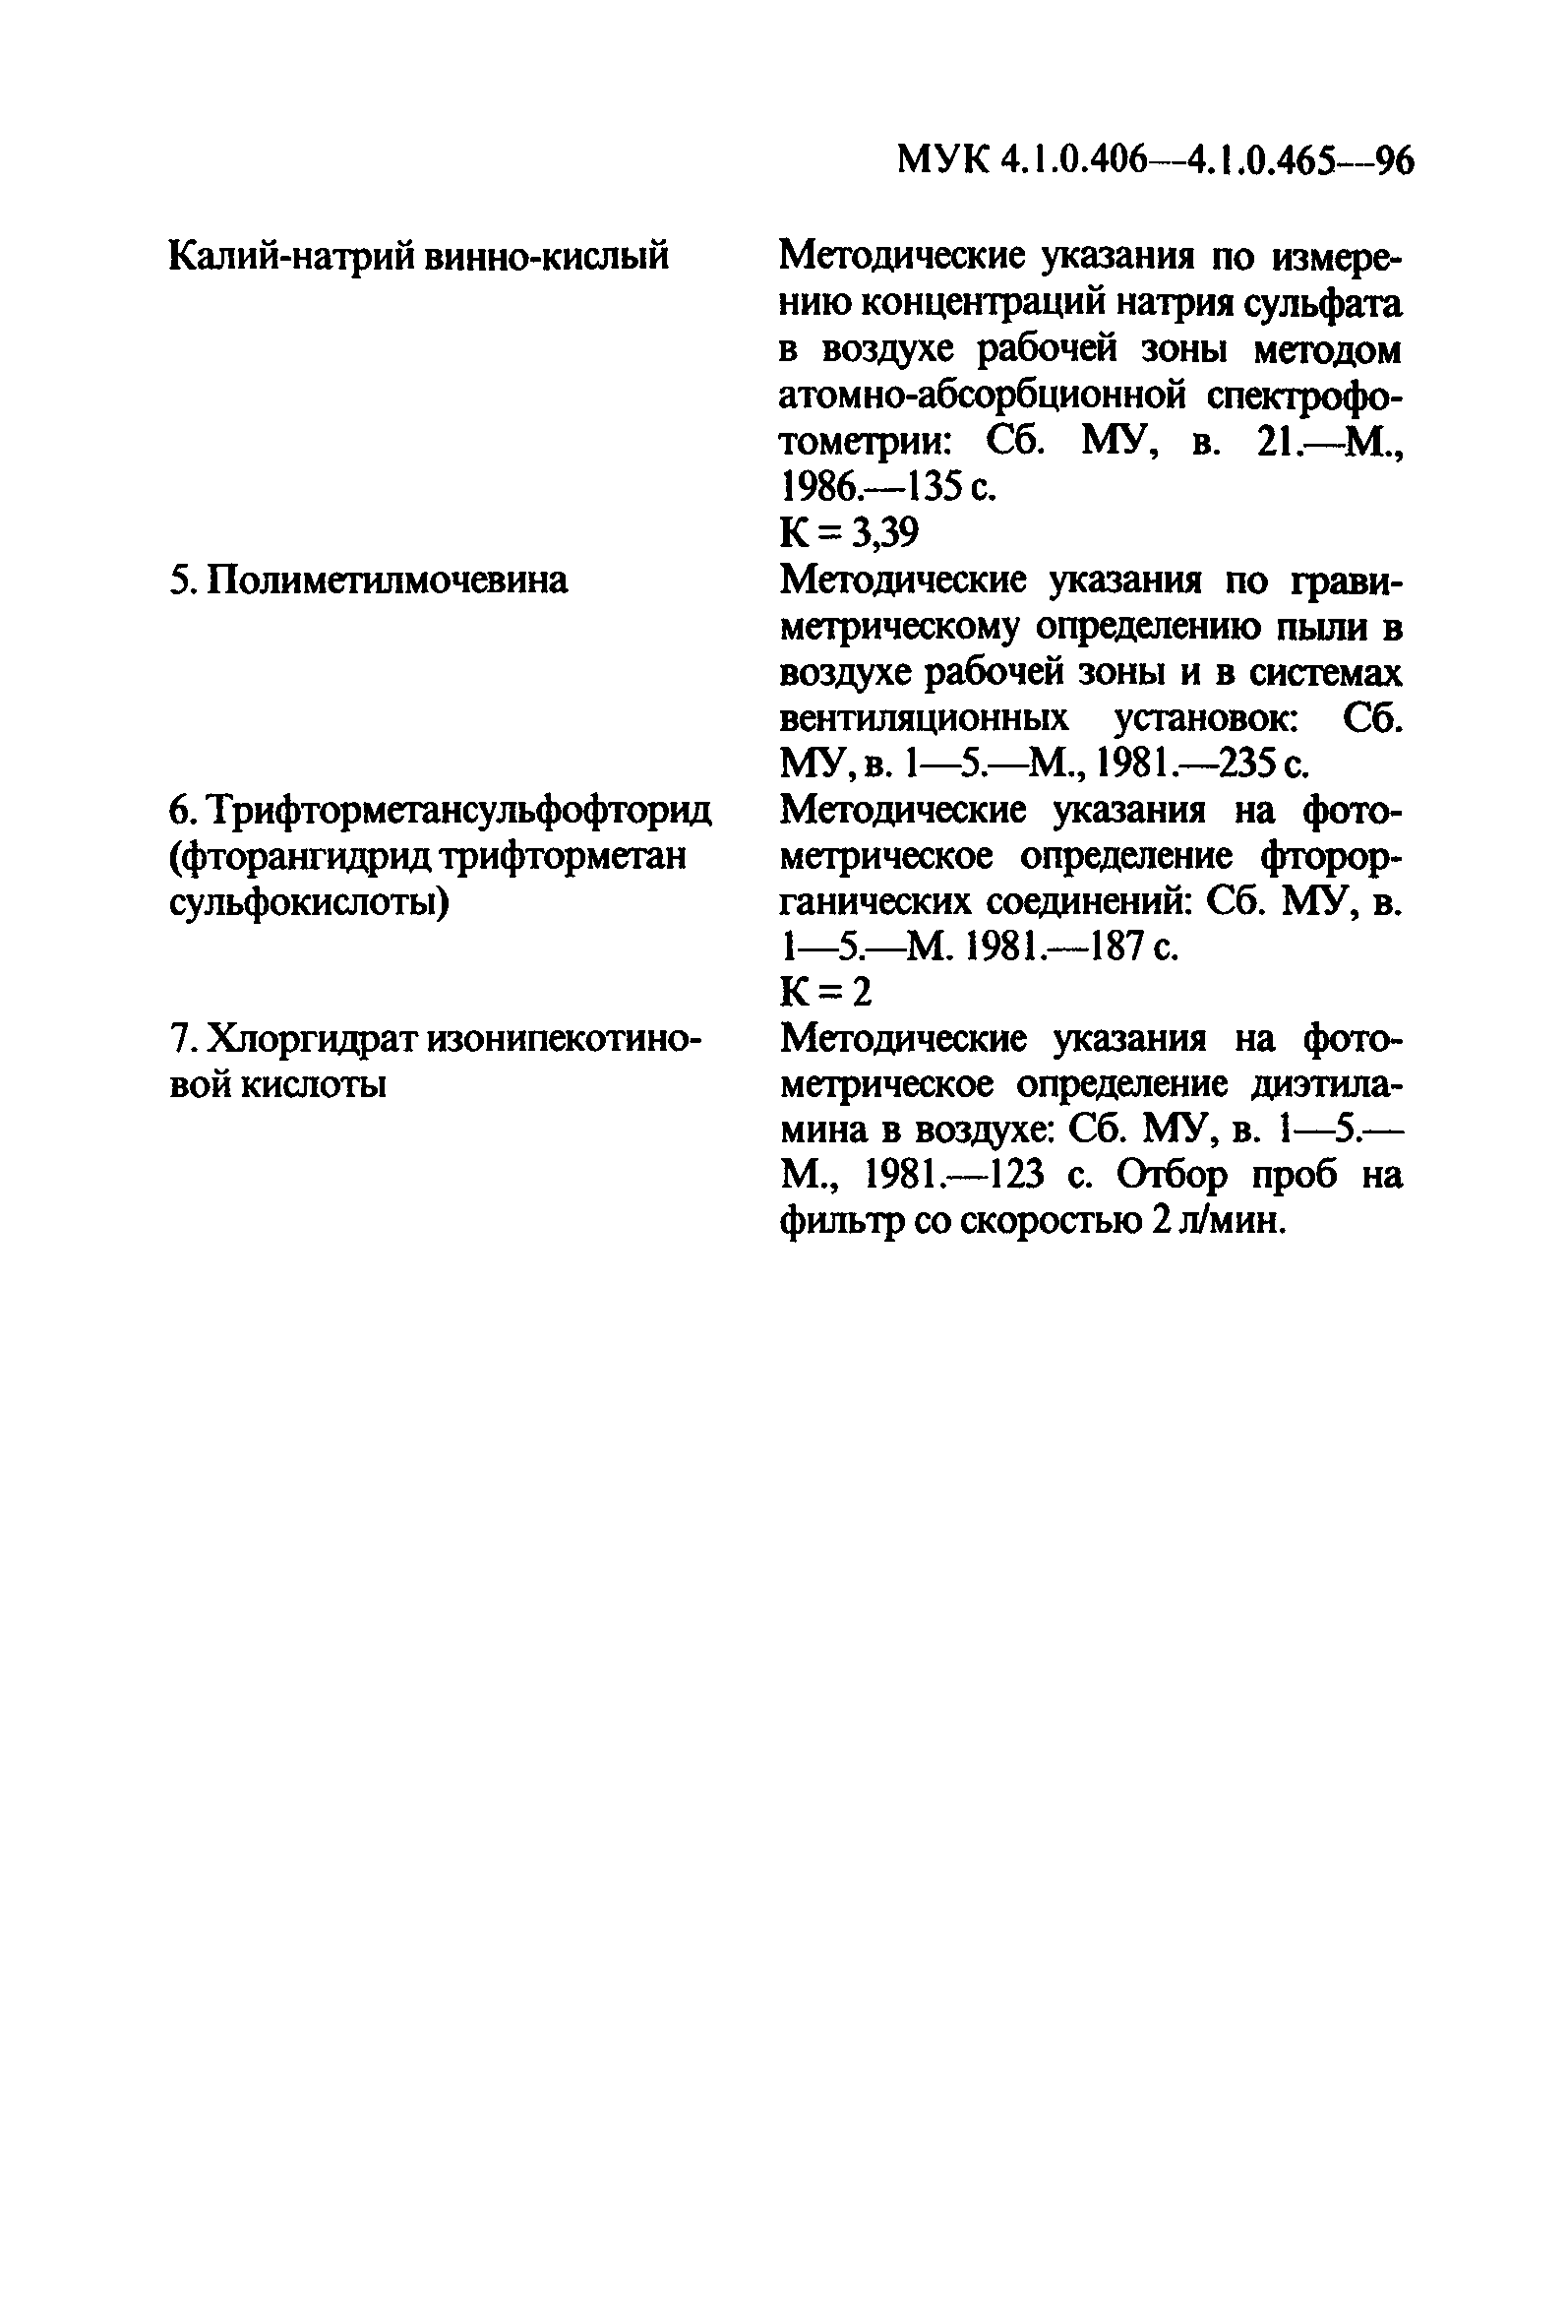 МУК 4.1.0.431-96